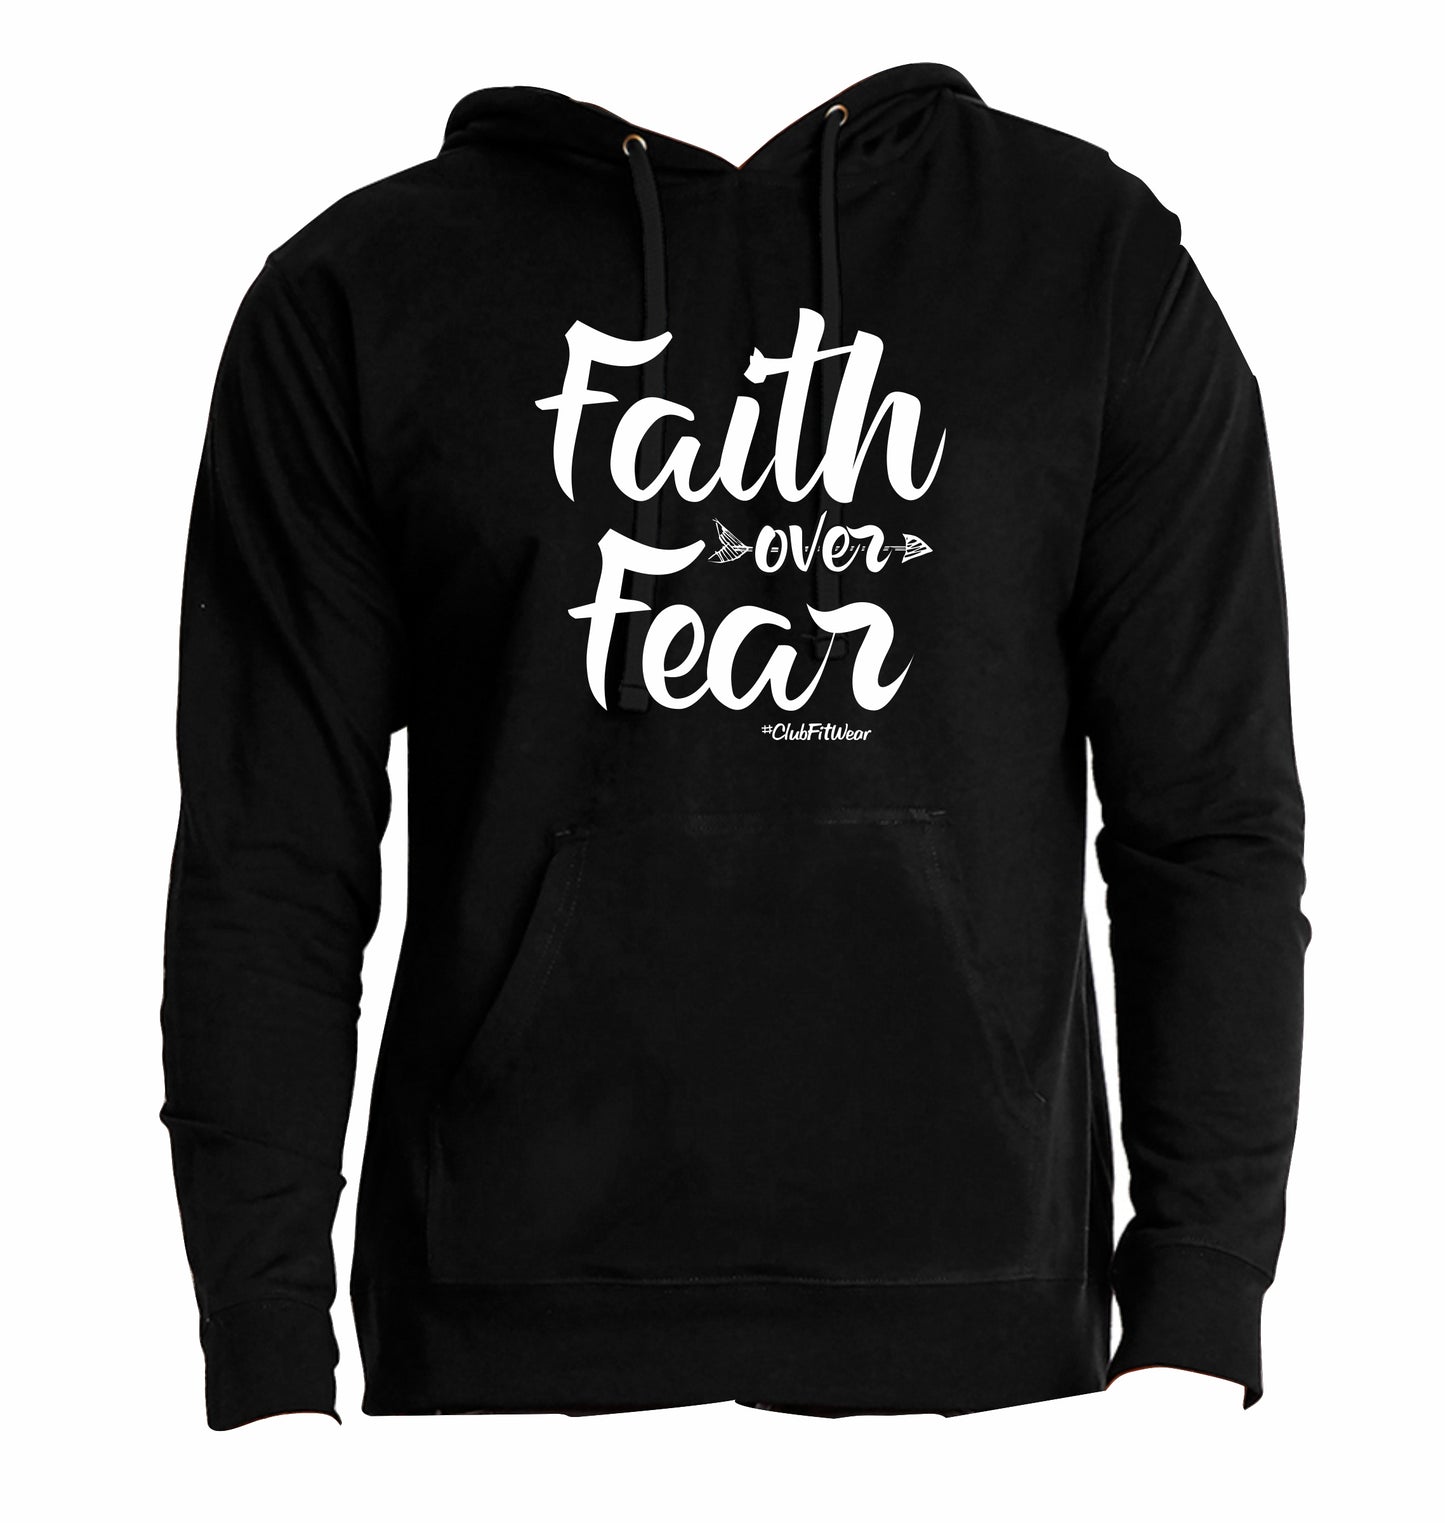 Faith over Fear - Hoodie